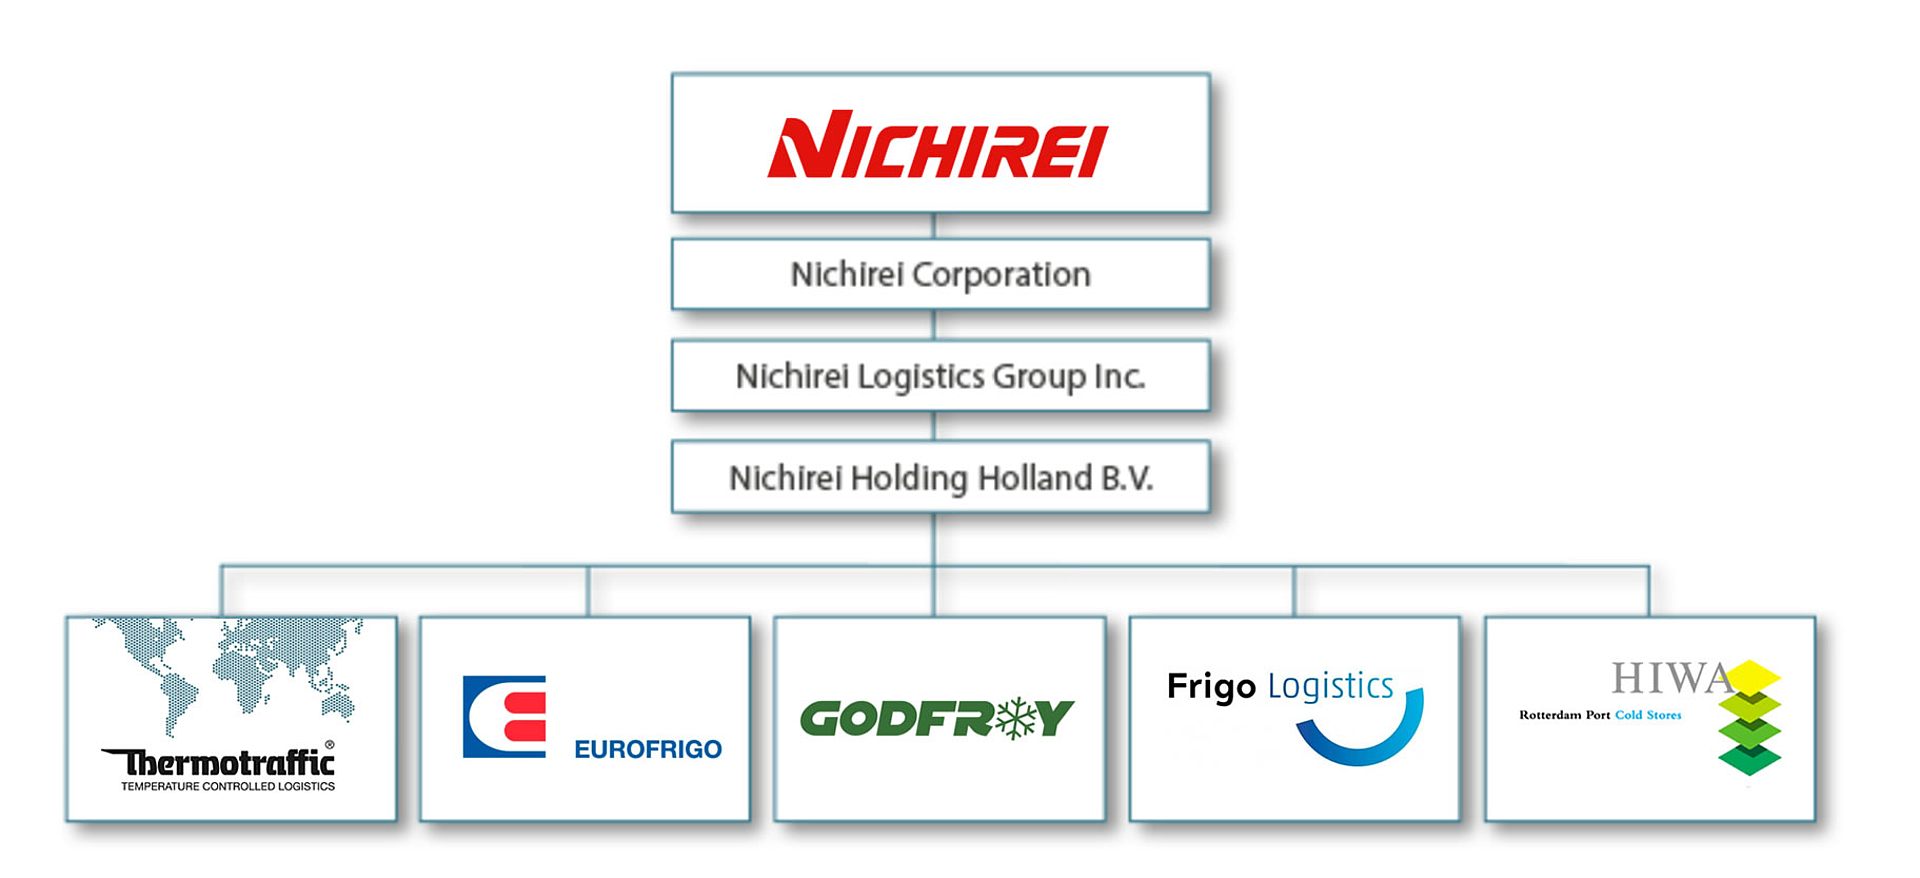 Nichirei Corporation - Netzwerk in Europa